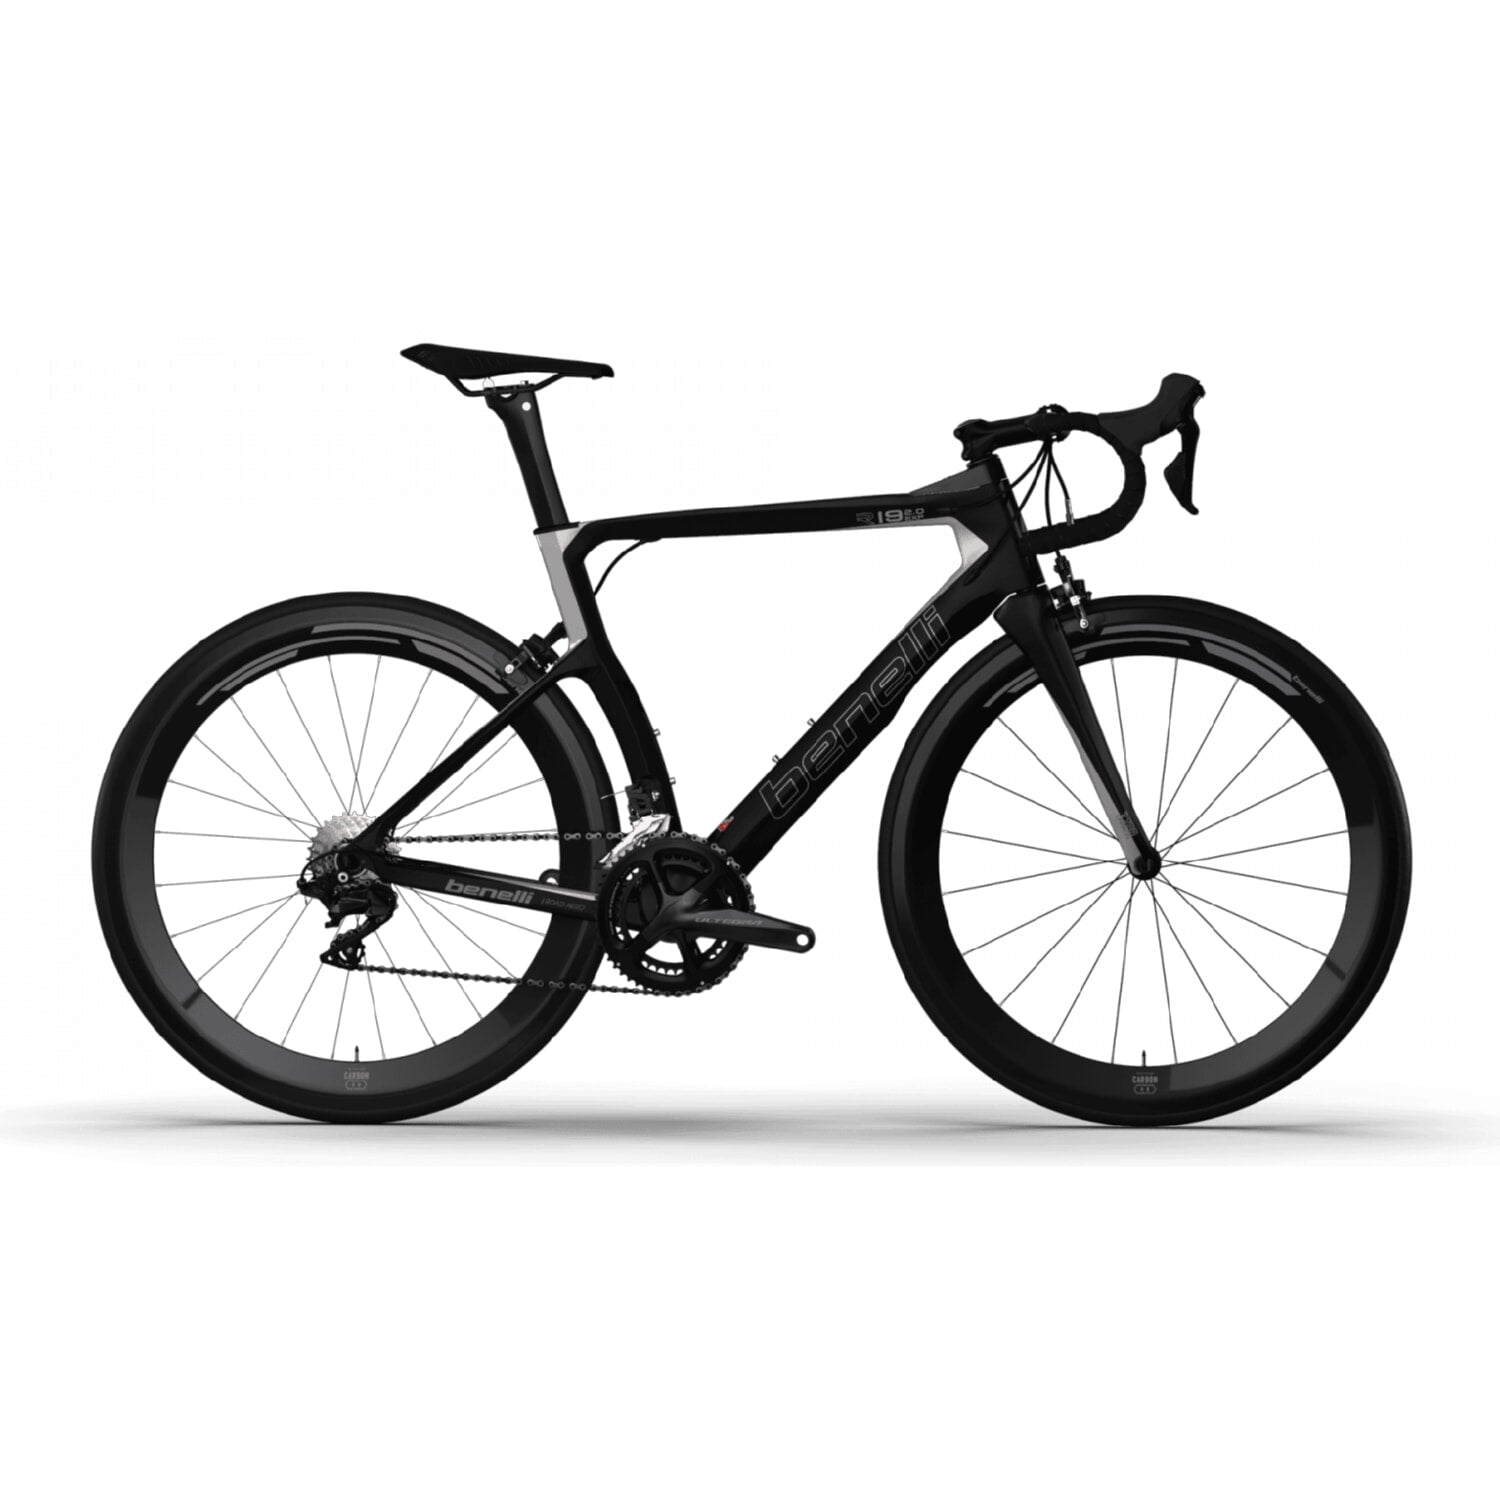 Bicicleta Ruta Benelli Carb. (R19 2.0 Exp Carb) Negra 56 (ULTEGRA)